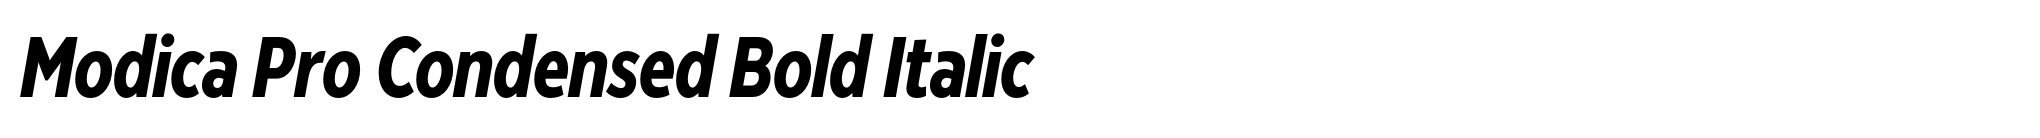 Modica Pro Condensed Bold Italic image